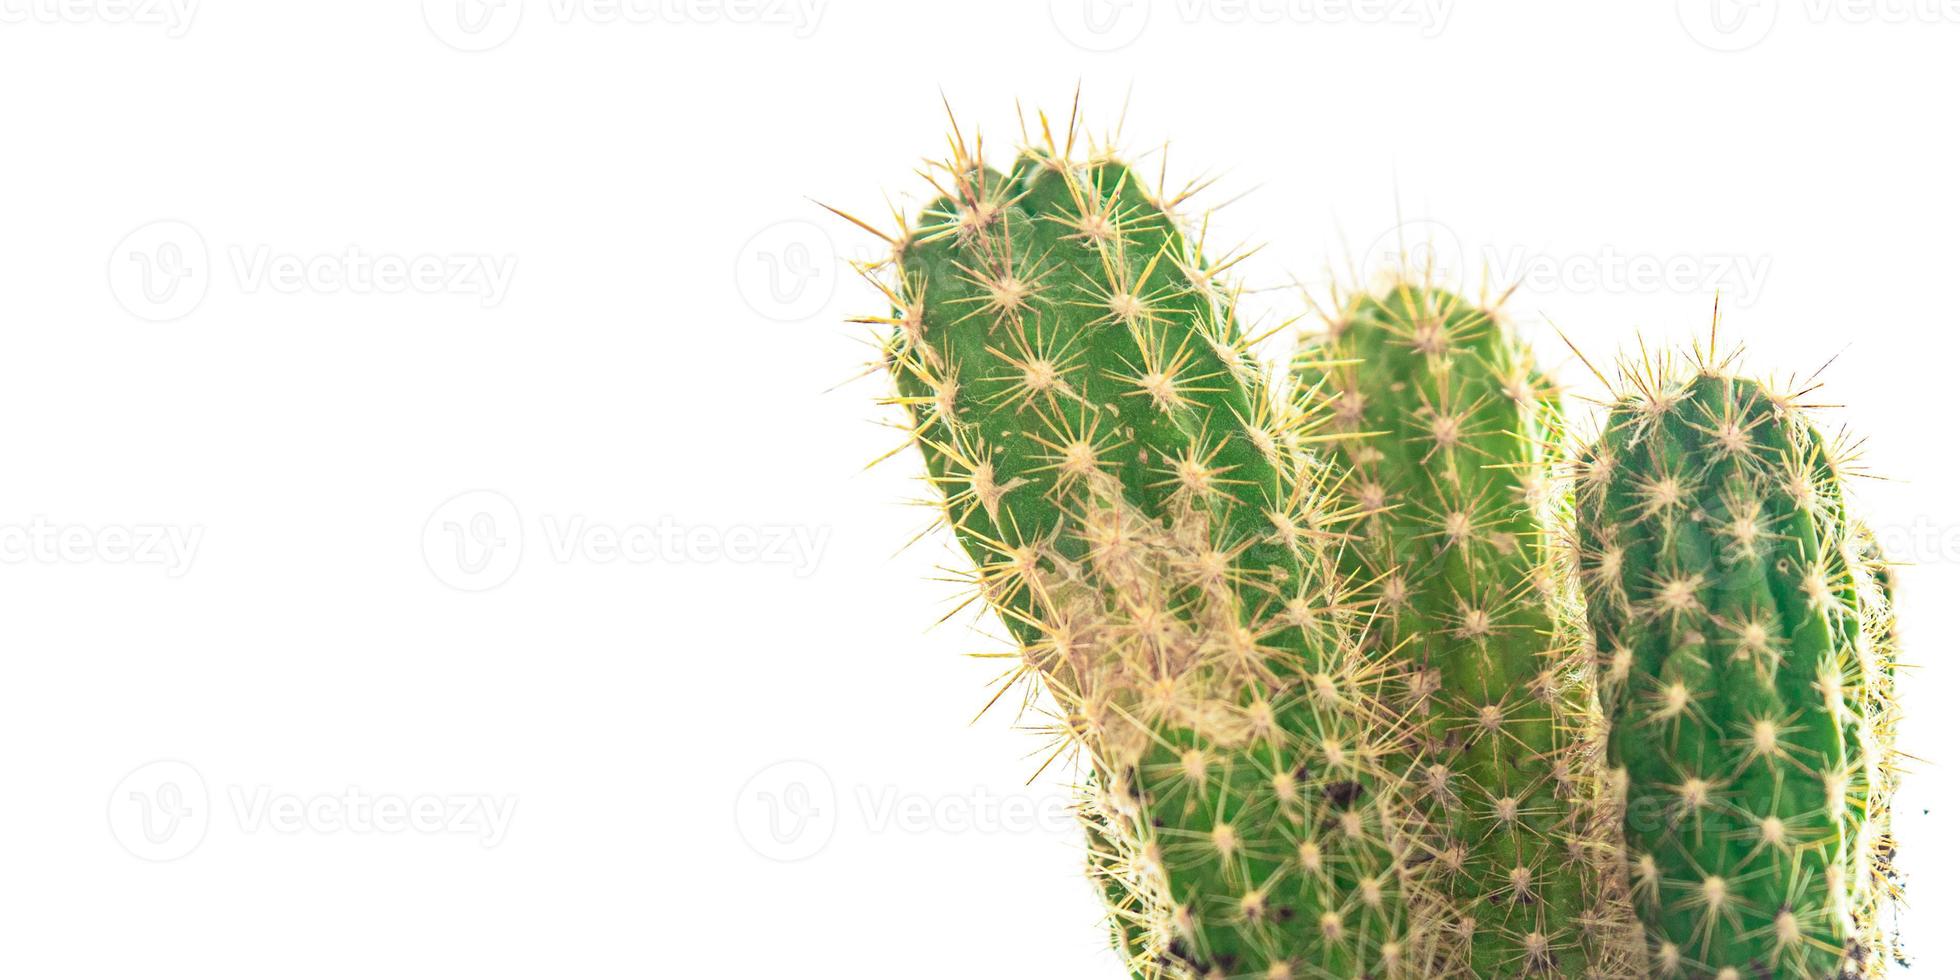 kaktus taggig växt suckulenter vintergröna inomhusblomma i en blomkruka på bordet foto